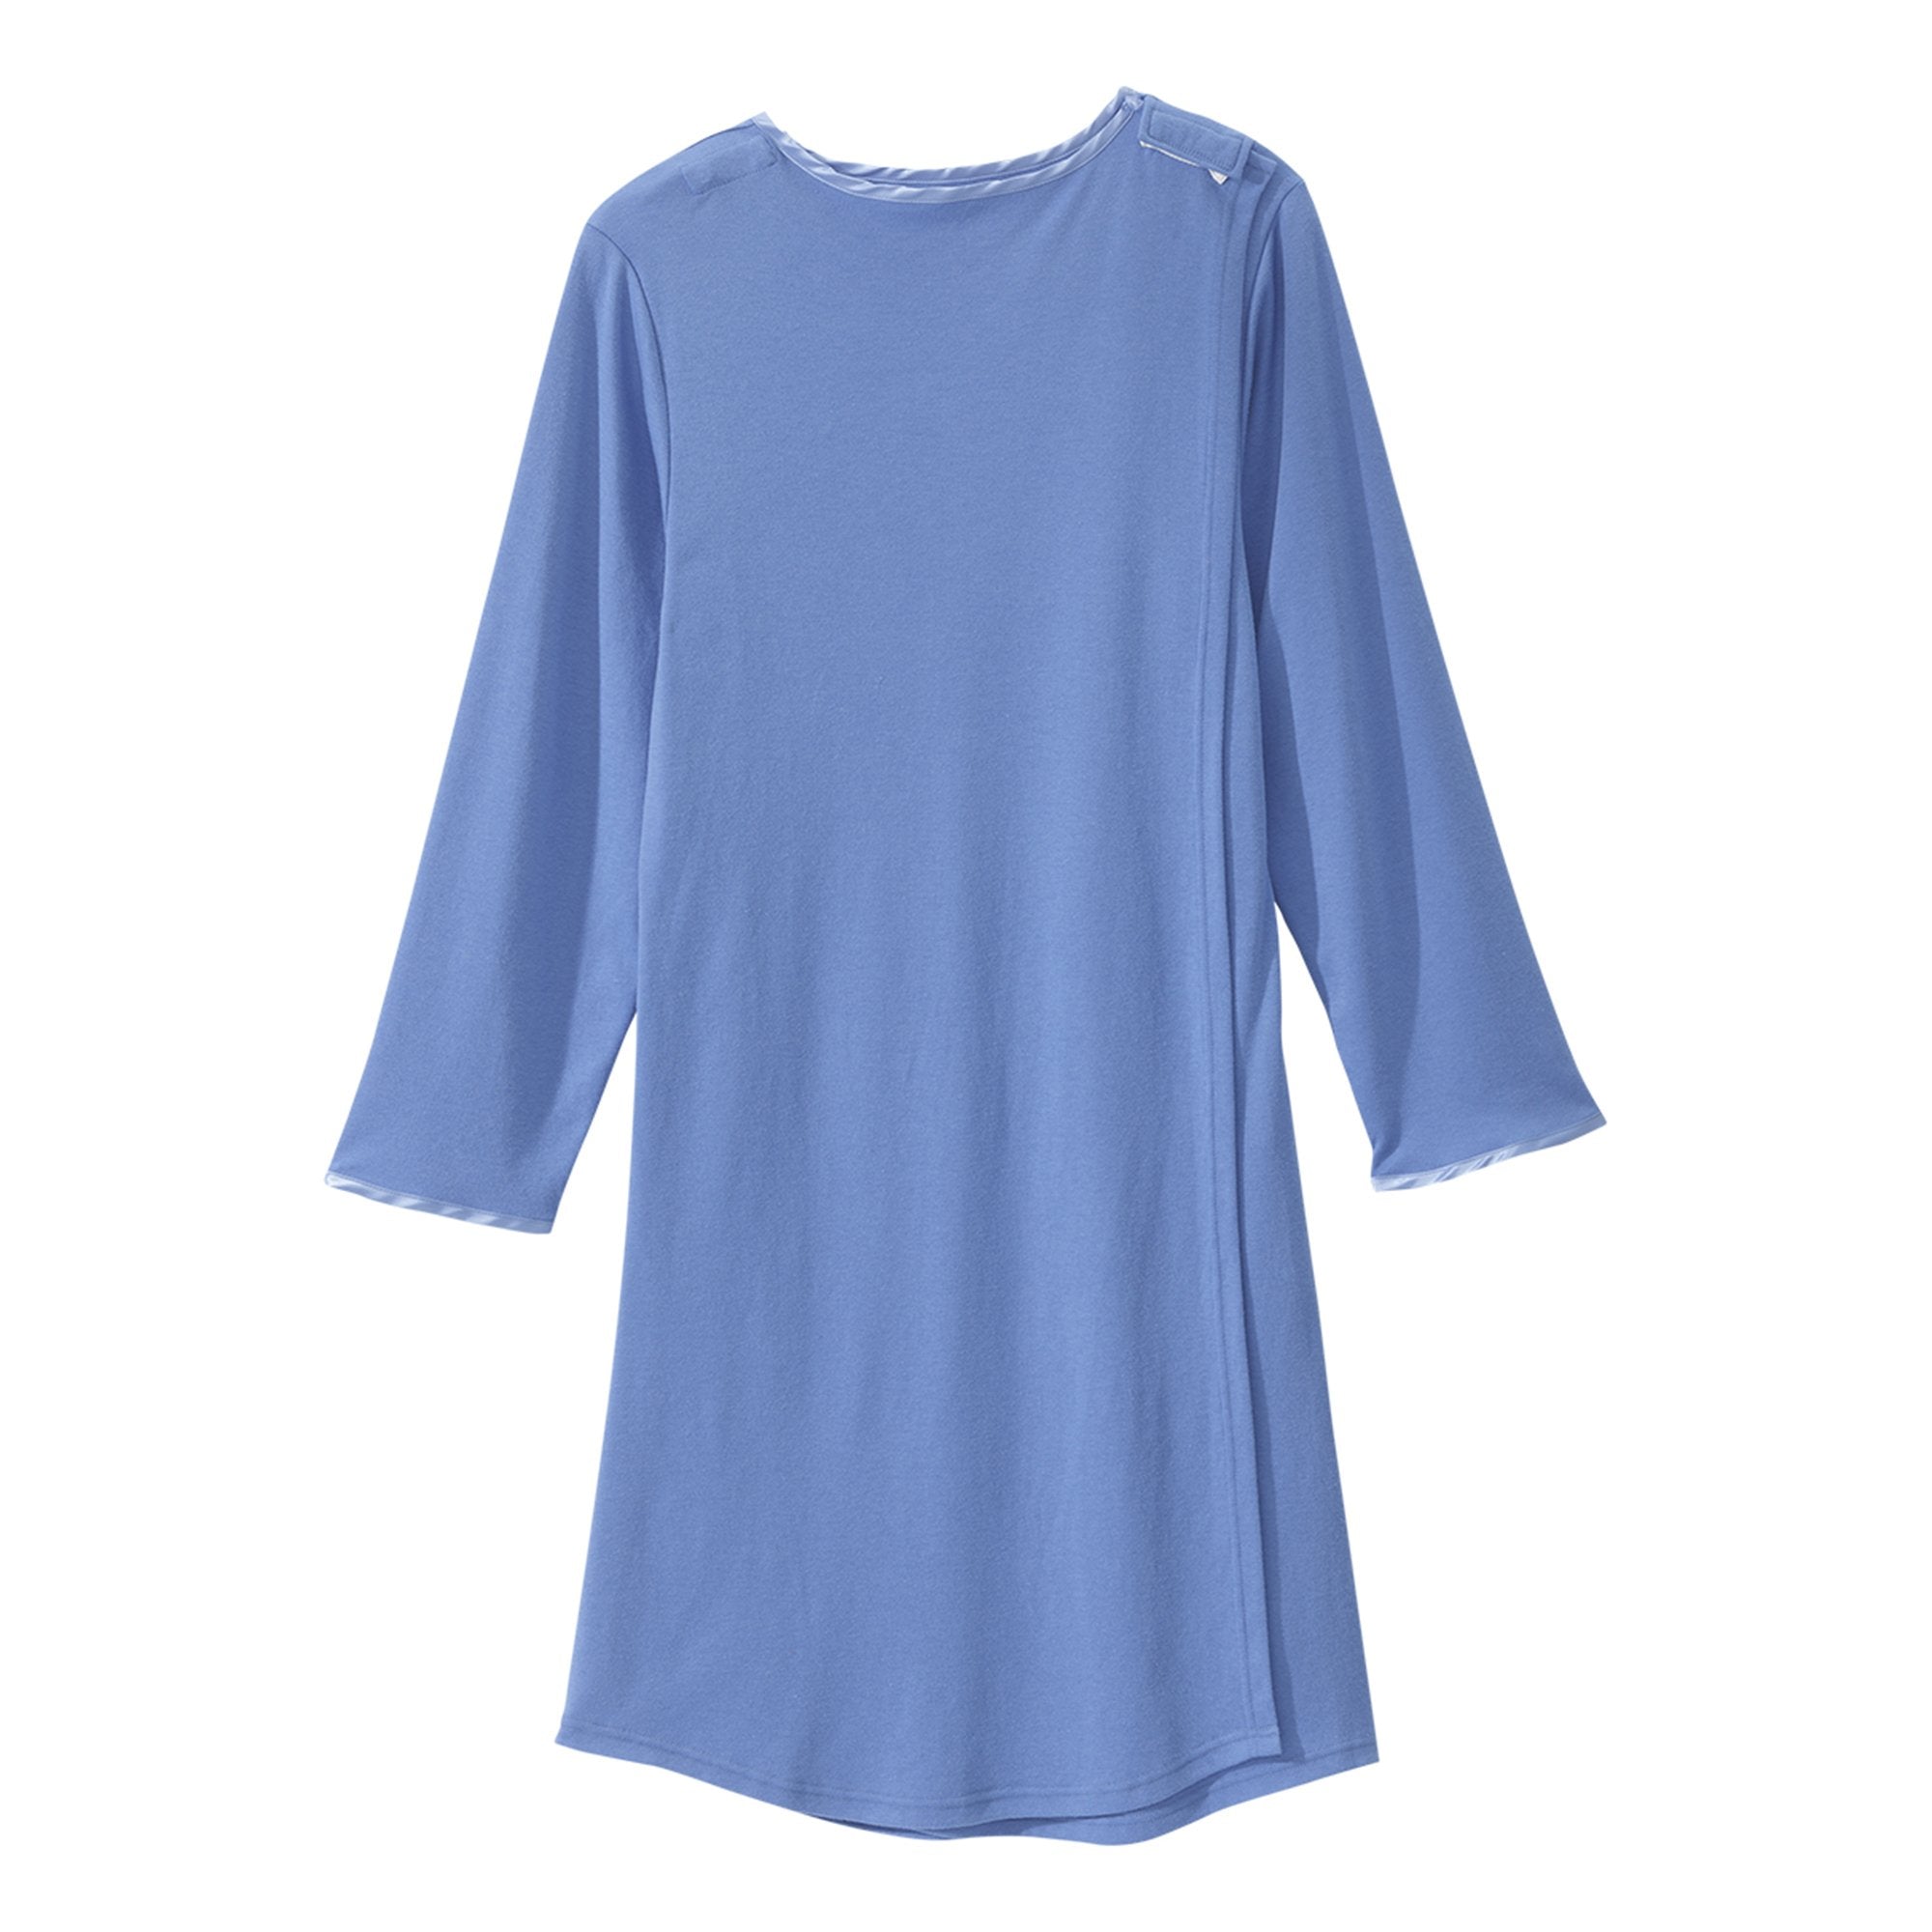 Silverts® Shoulder Snap Patient Exam Gown, Large, Blue (1 Unit)